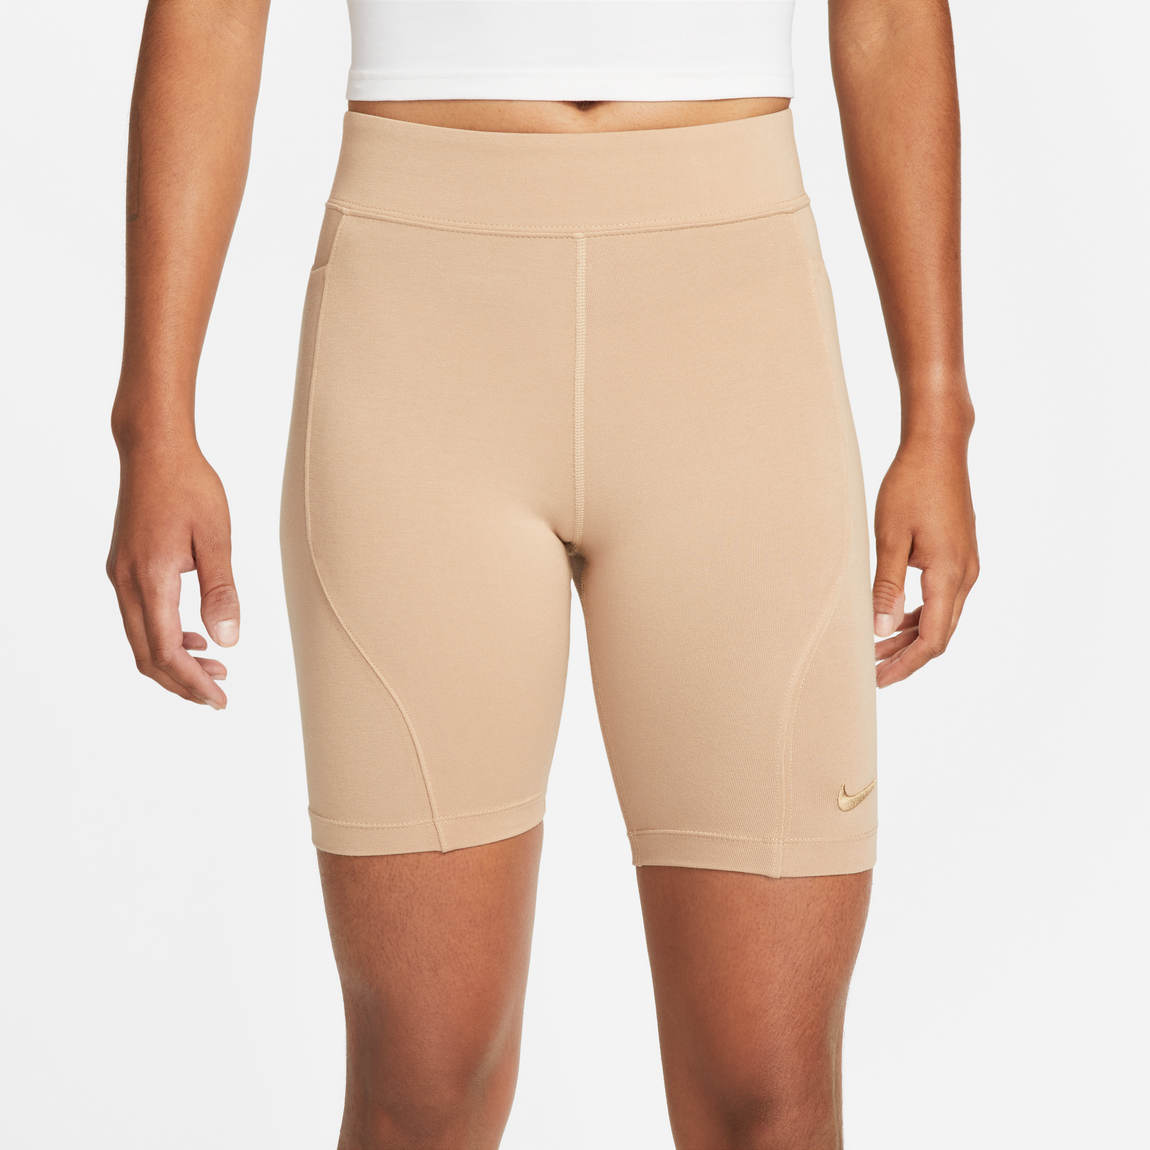 Nike Women's Sportswear Everyday Wear Shorts (Hemp/Dk Driftwood) - Nike Women's Sportswear Everyday Wear Shorts (Hemp/Dk Driftwood) - 